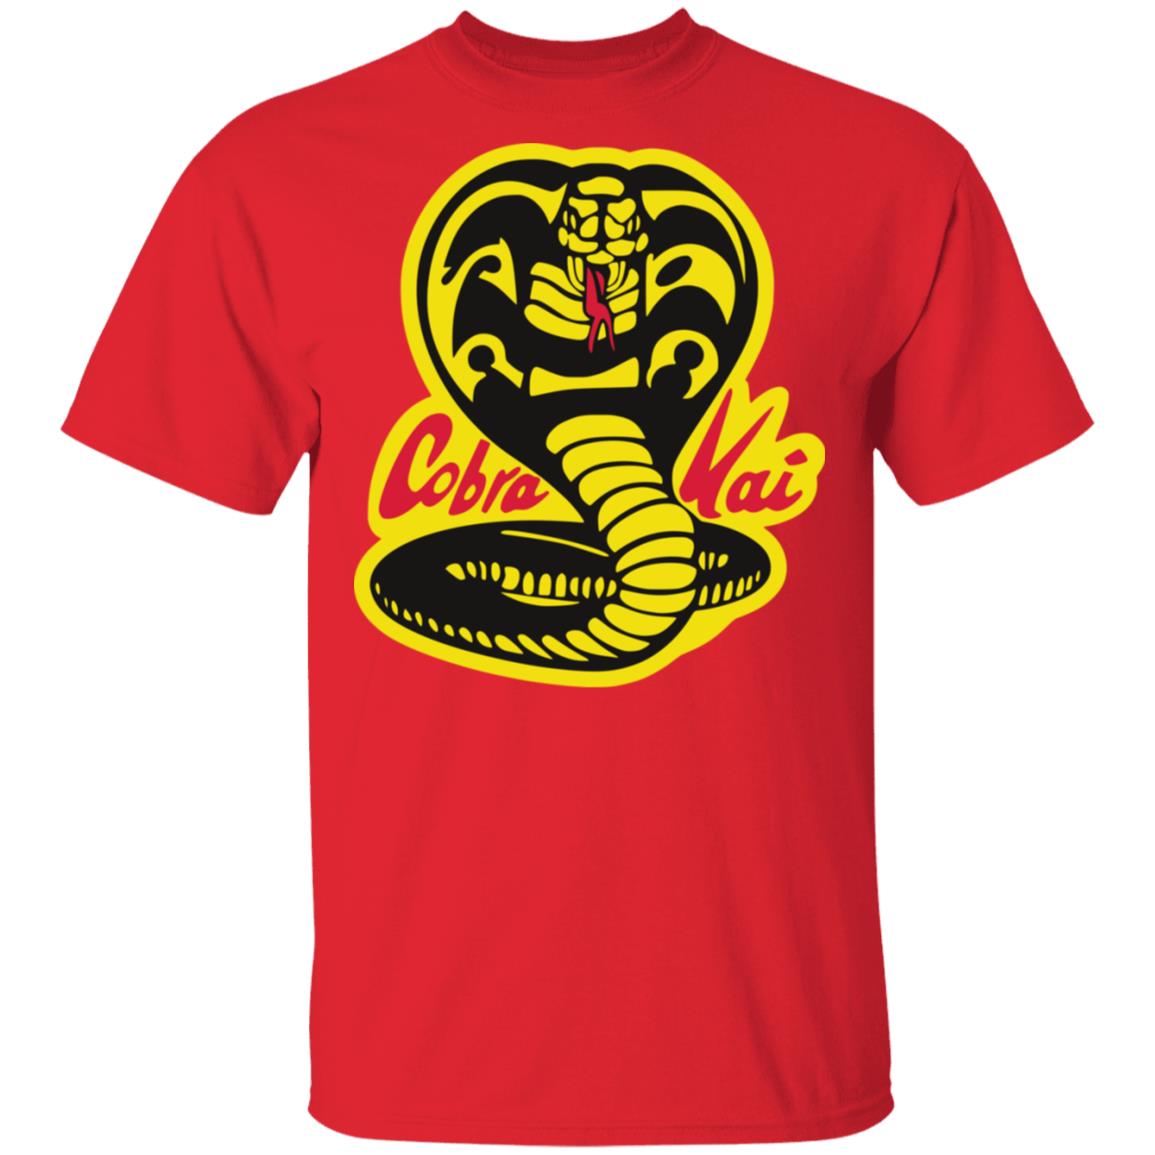 Cobra Kai Snake Logo Red T-Shirt - Merchip8